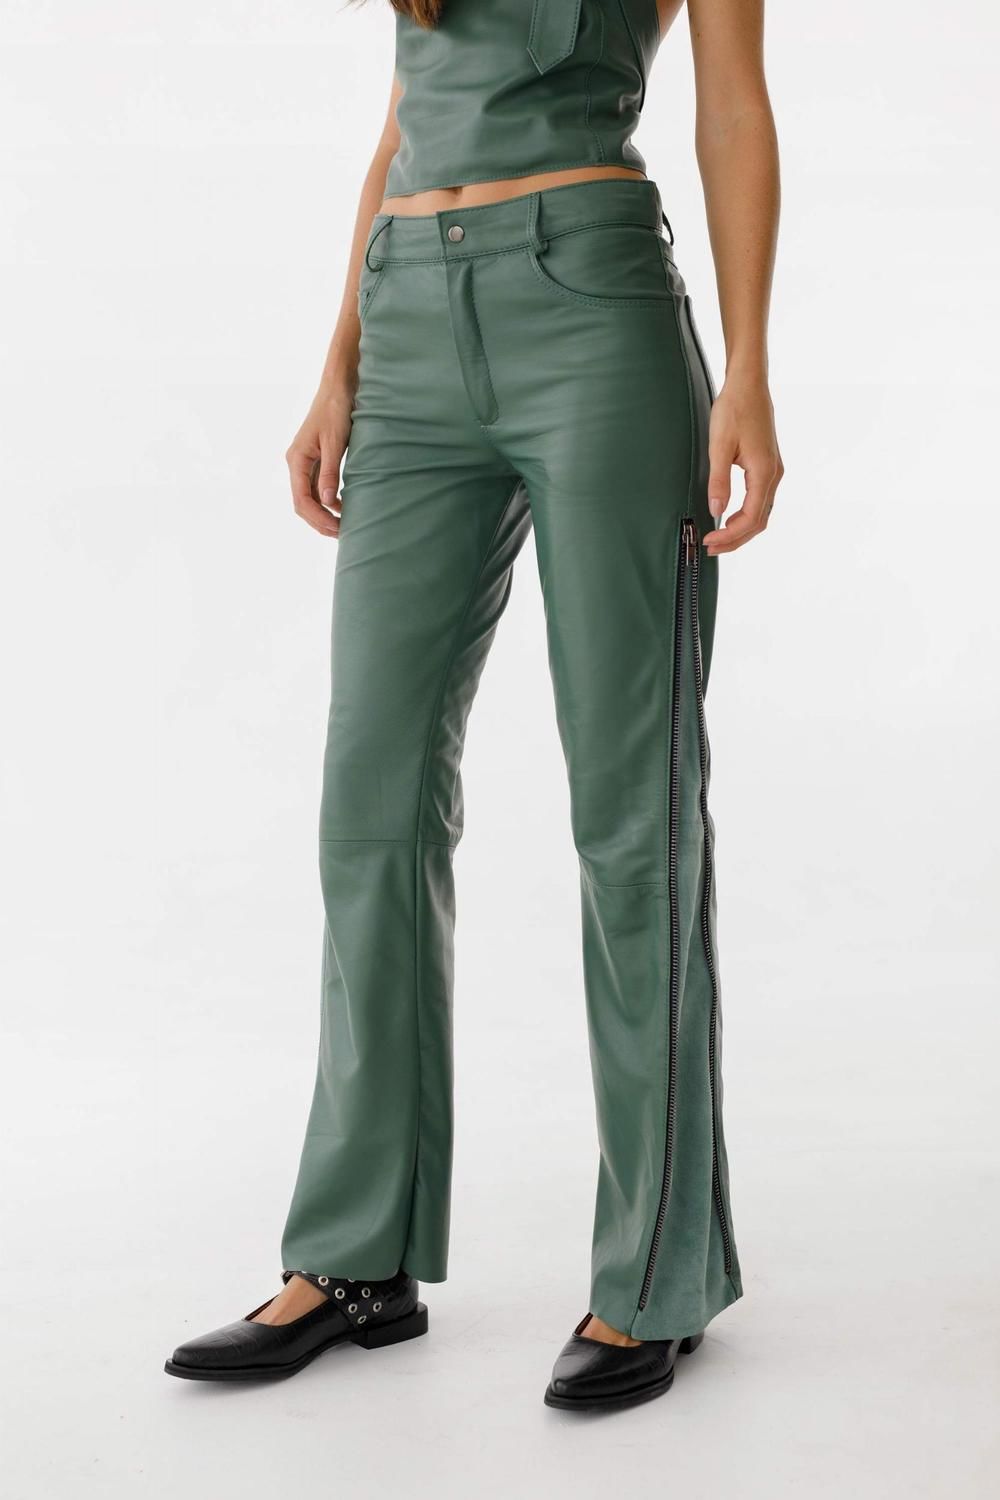 Pantalon Leather Golden verde l